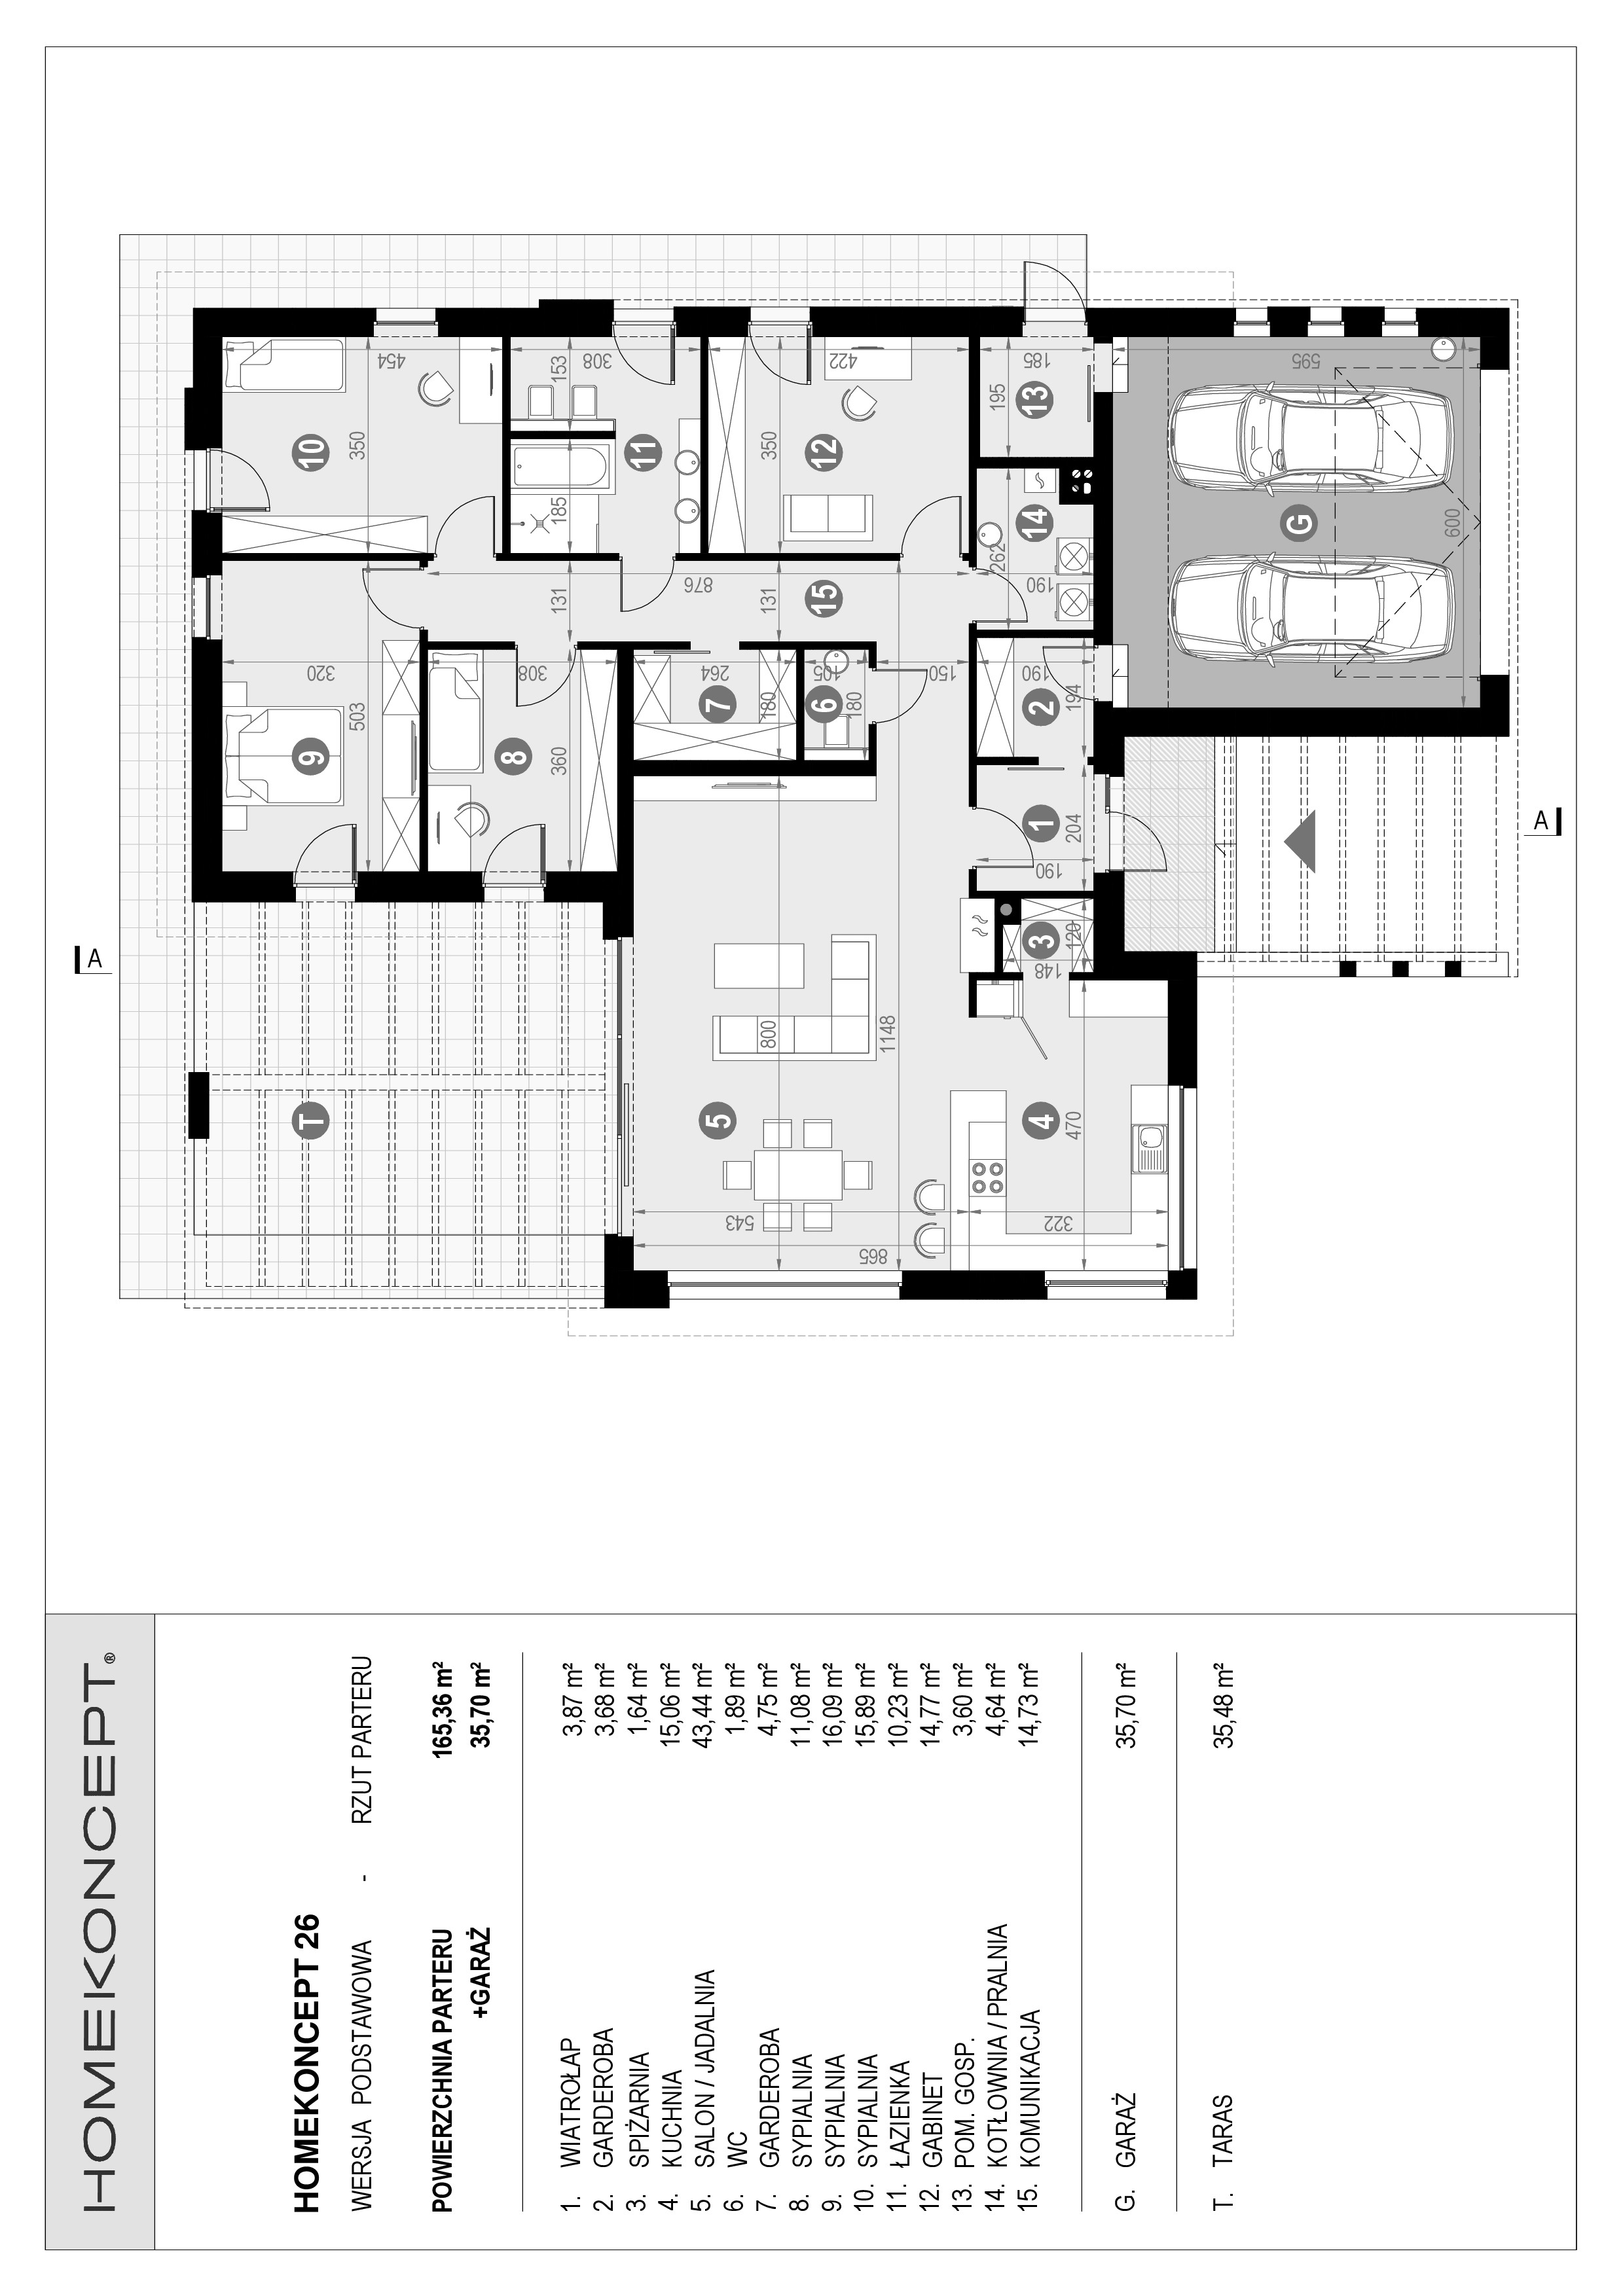 HOMEKONCEPT 26 - układ funkcjonalny nowoczesnego domu